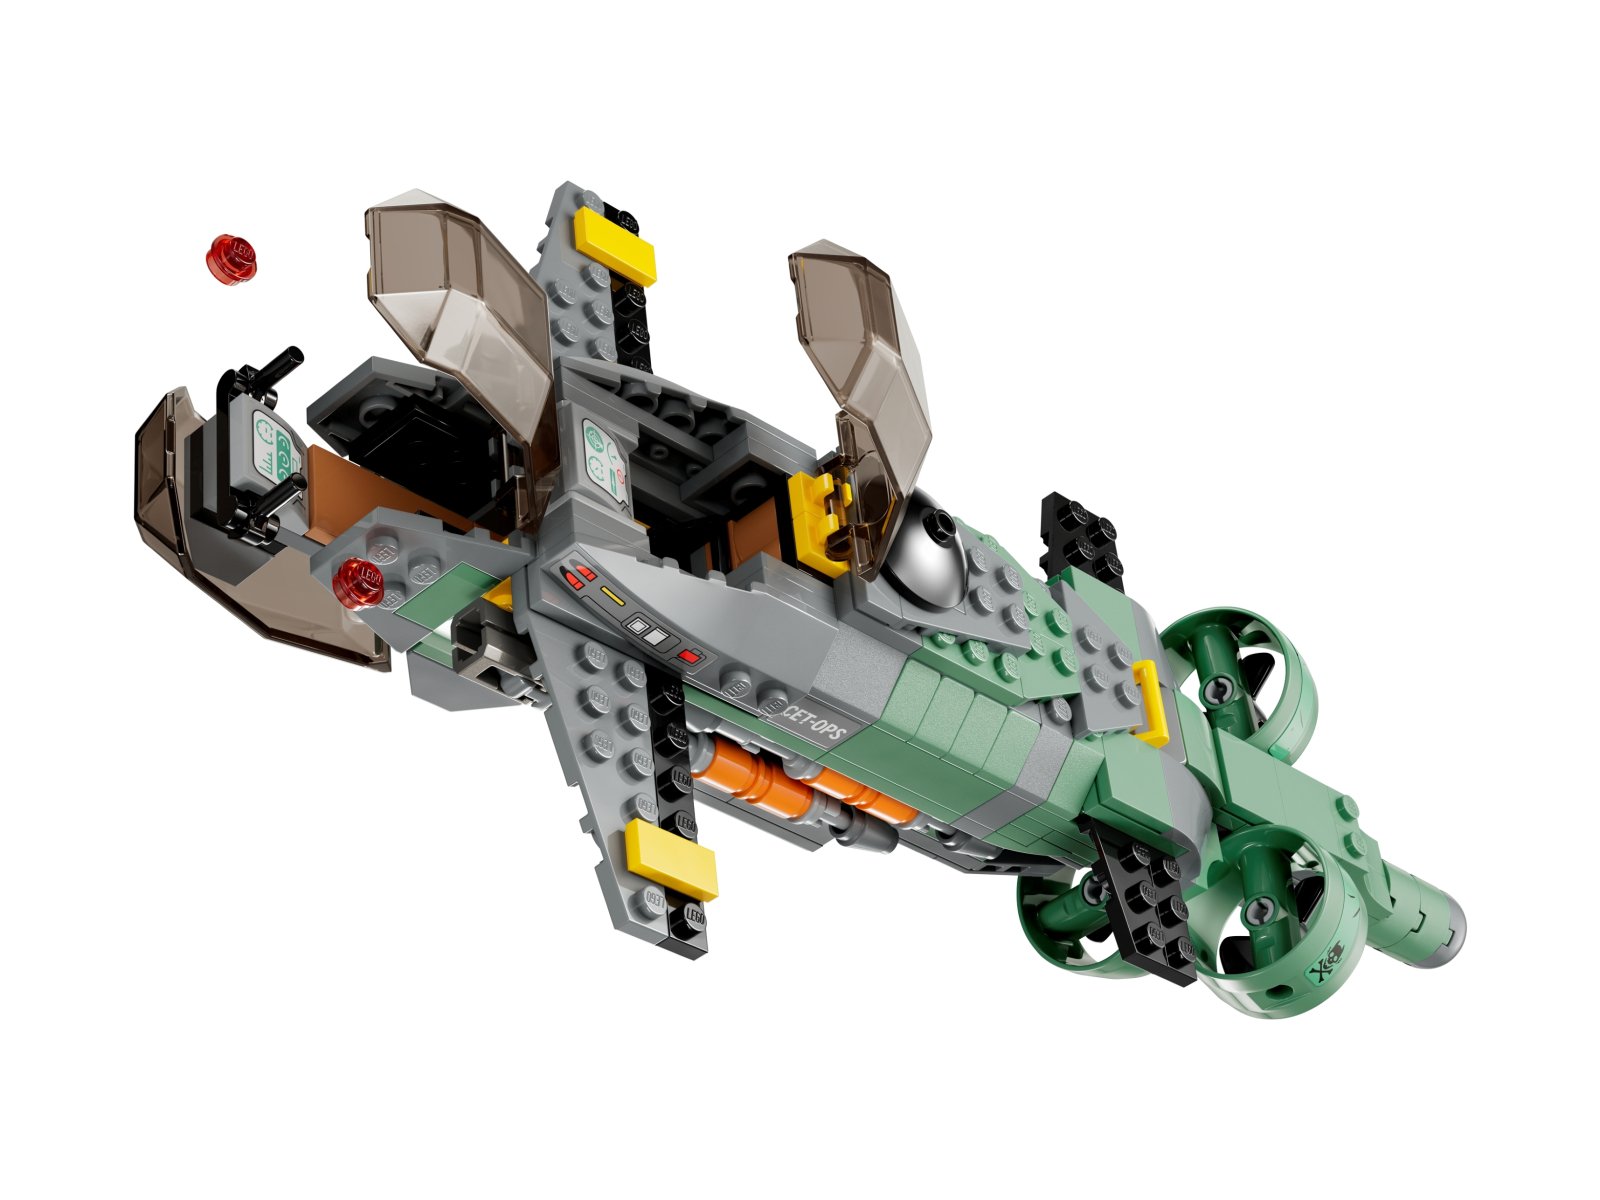 LEGO Avatar 75577 Łódź podwodna Mako